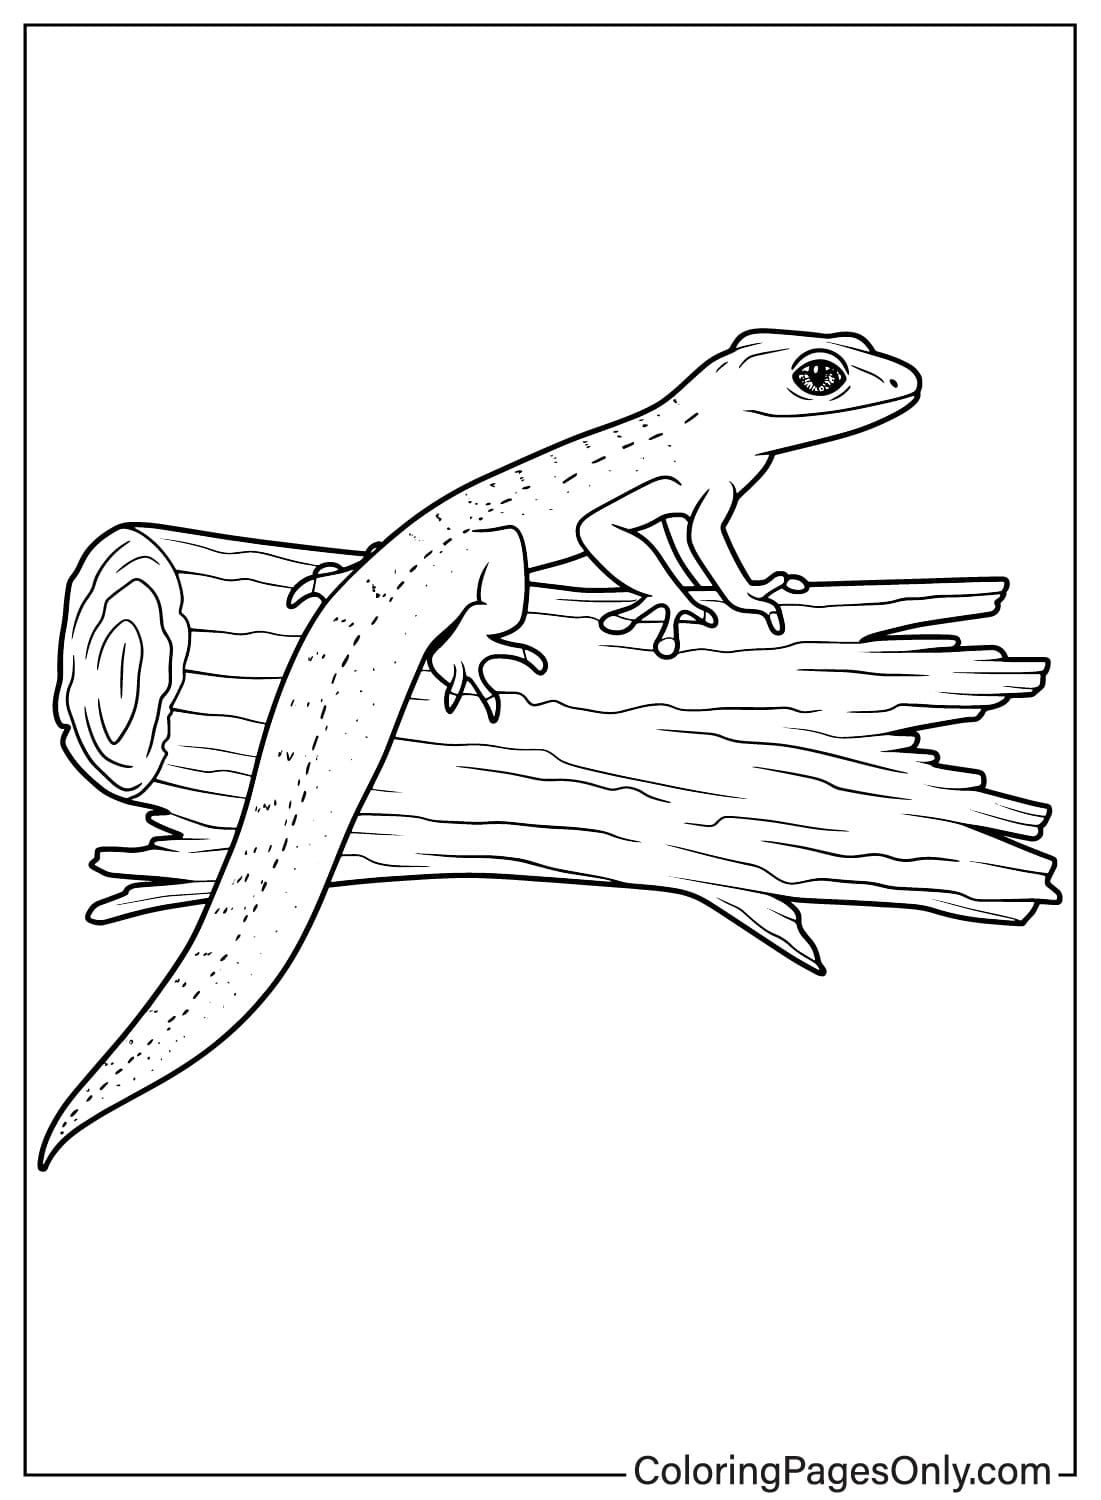 Página para colorir de lagarto para impressão em lagarto